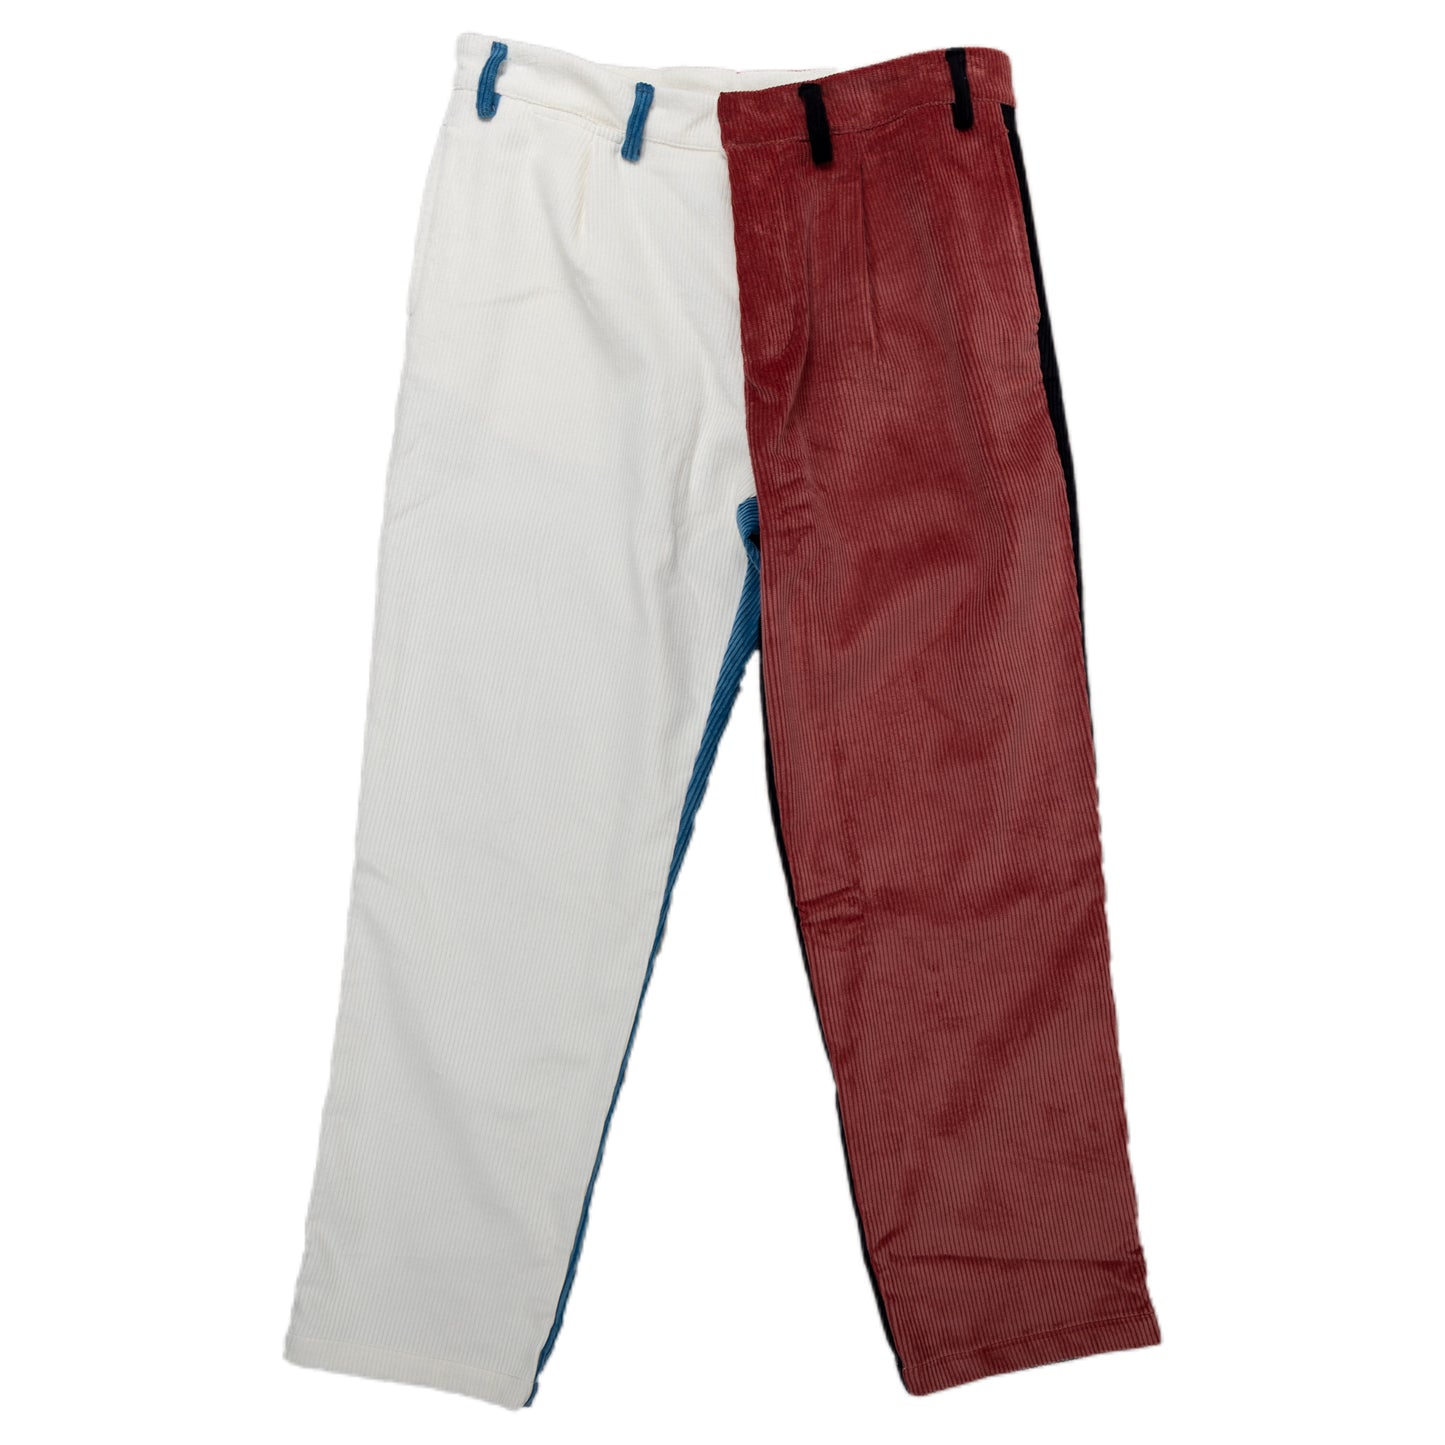 Reception SC Classic Pants Bottoms Corduroy Multi Color Front